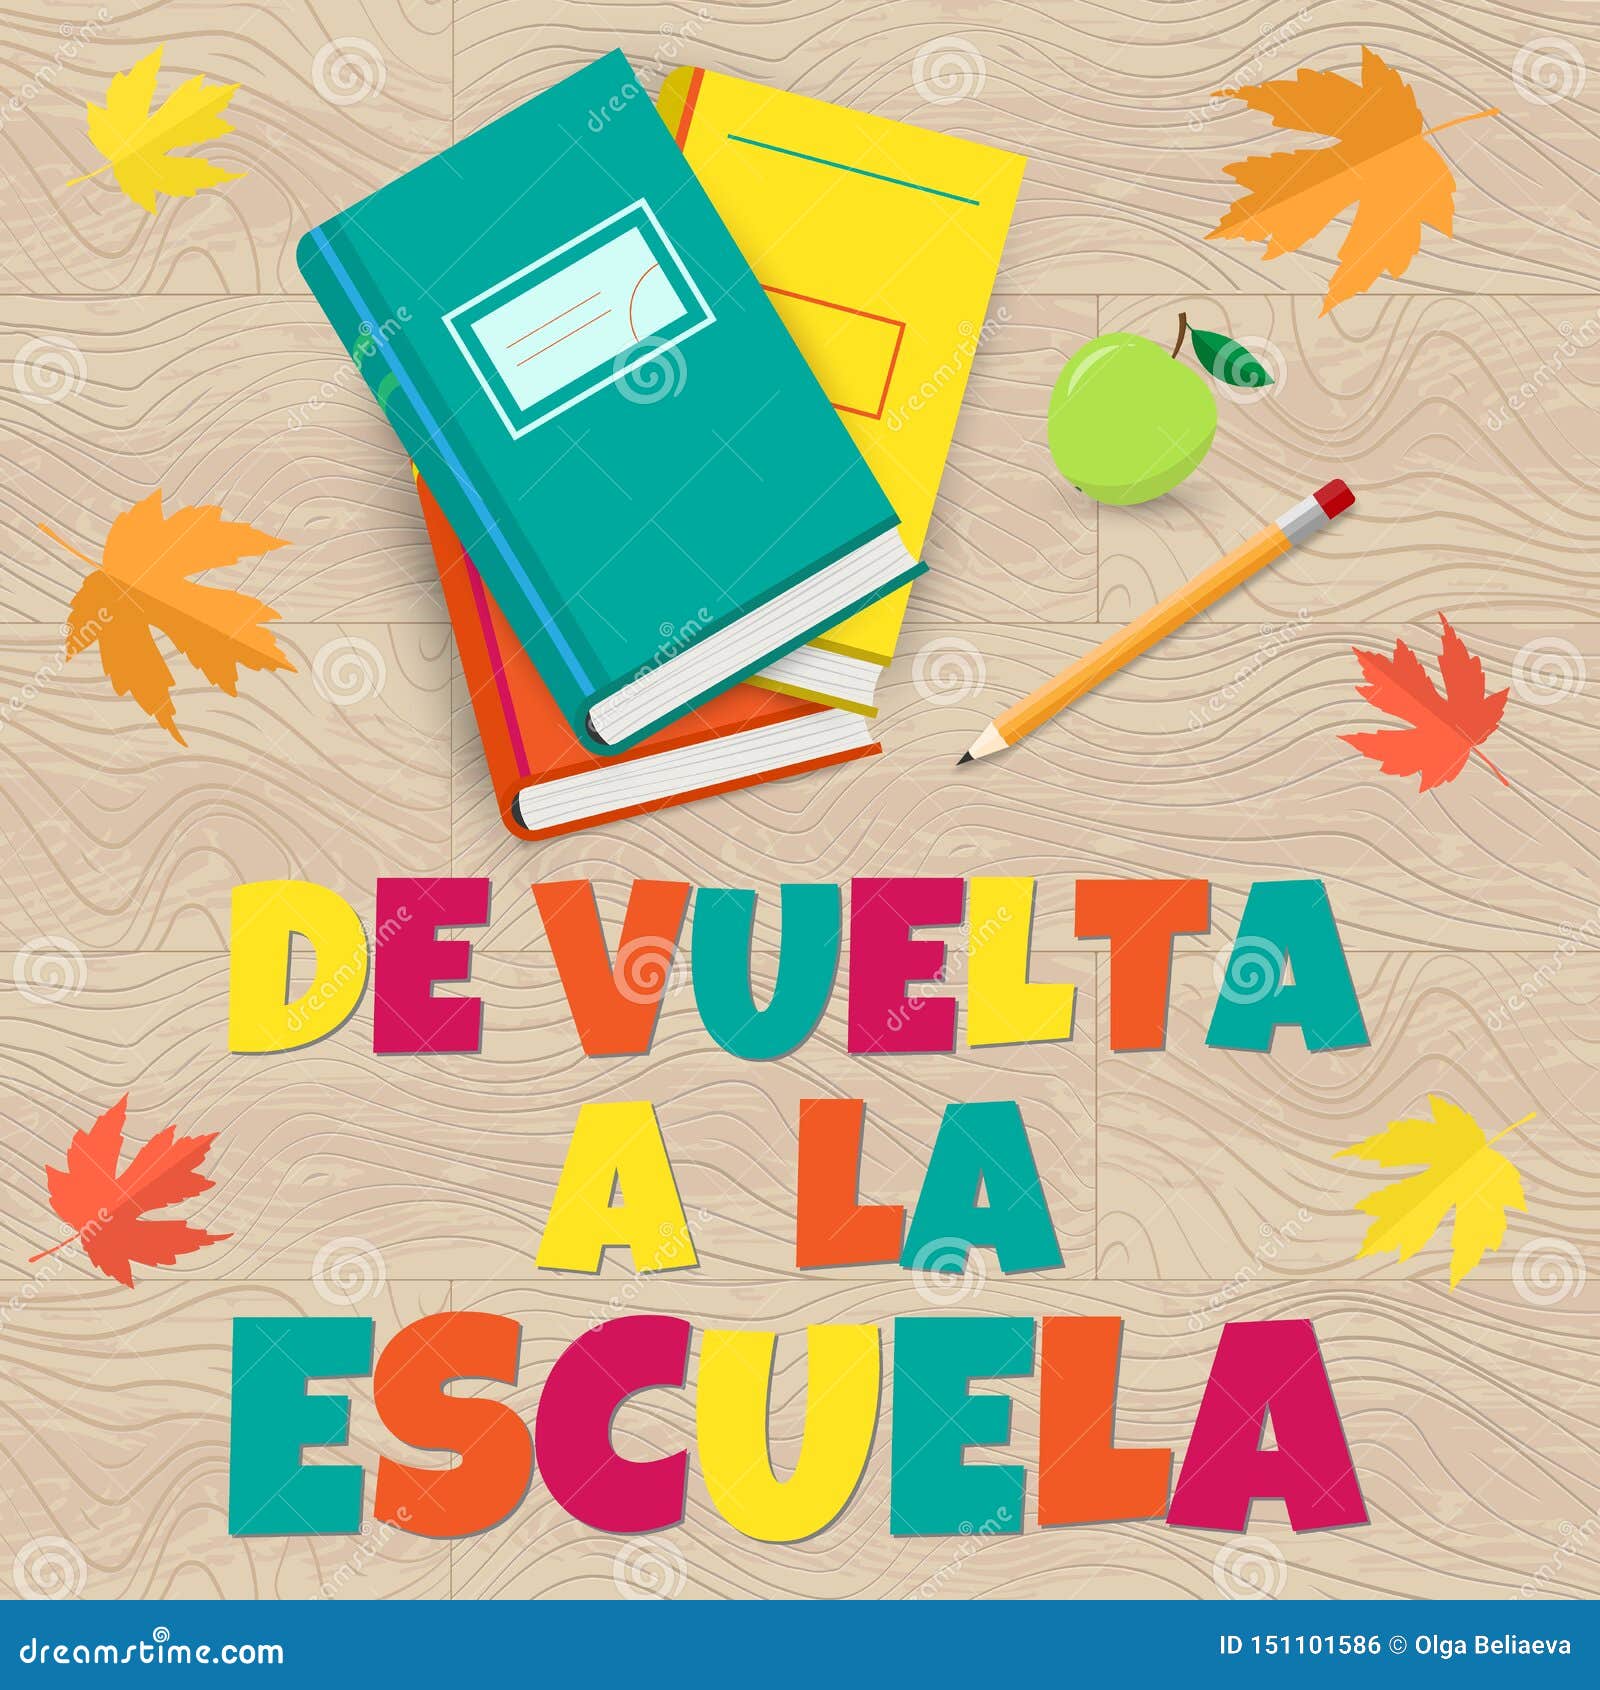 Printable Back to School Sign/ De Vuelta a La Escuela 